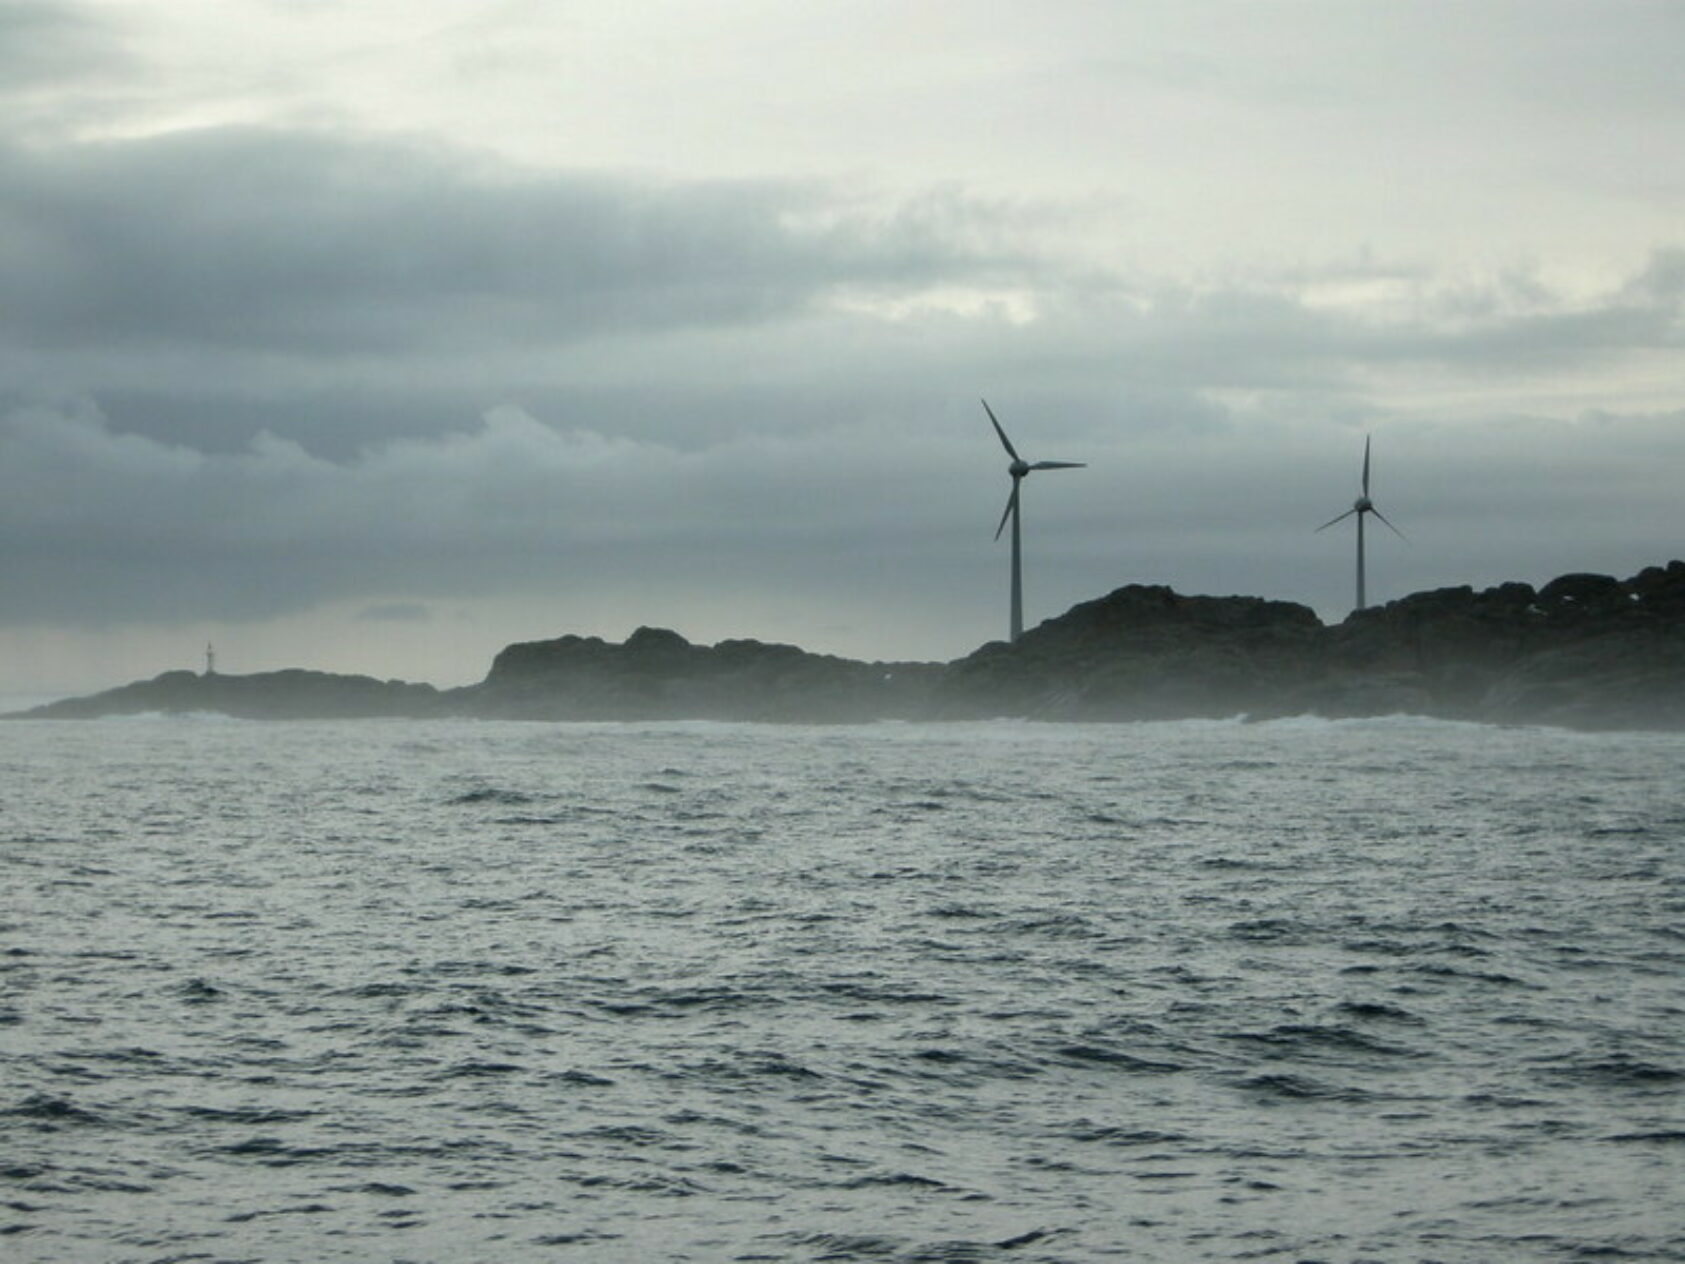 Foto: Atle Grimsby, Flickr, To vindturbiner ble installert ved Utsira i 2004 og 2010. Dette kalles Utsira Vindpark. Den nye havvindparken Utstira Nord kommer til å bestå av ca. 140 vindturbiner, ca. 7 km. fra øyen Utsira, Flickr Utsira, , 